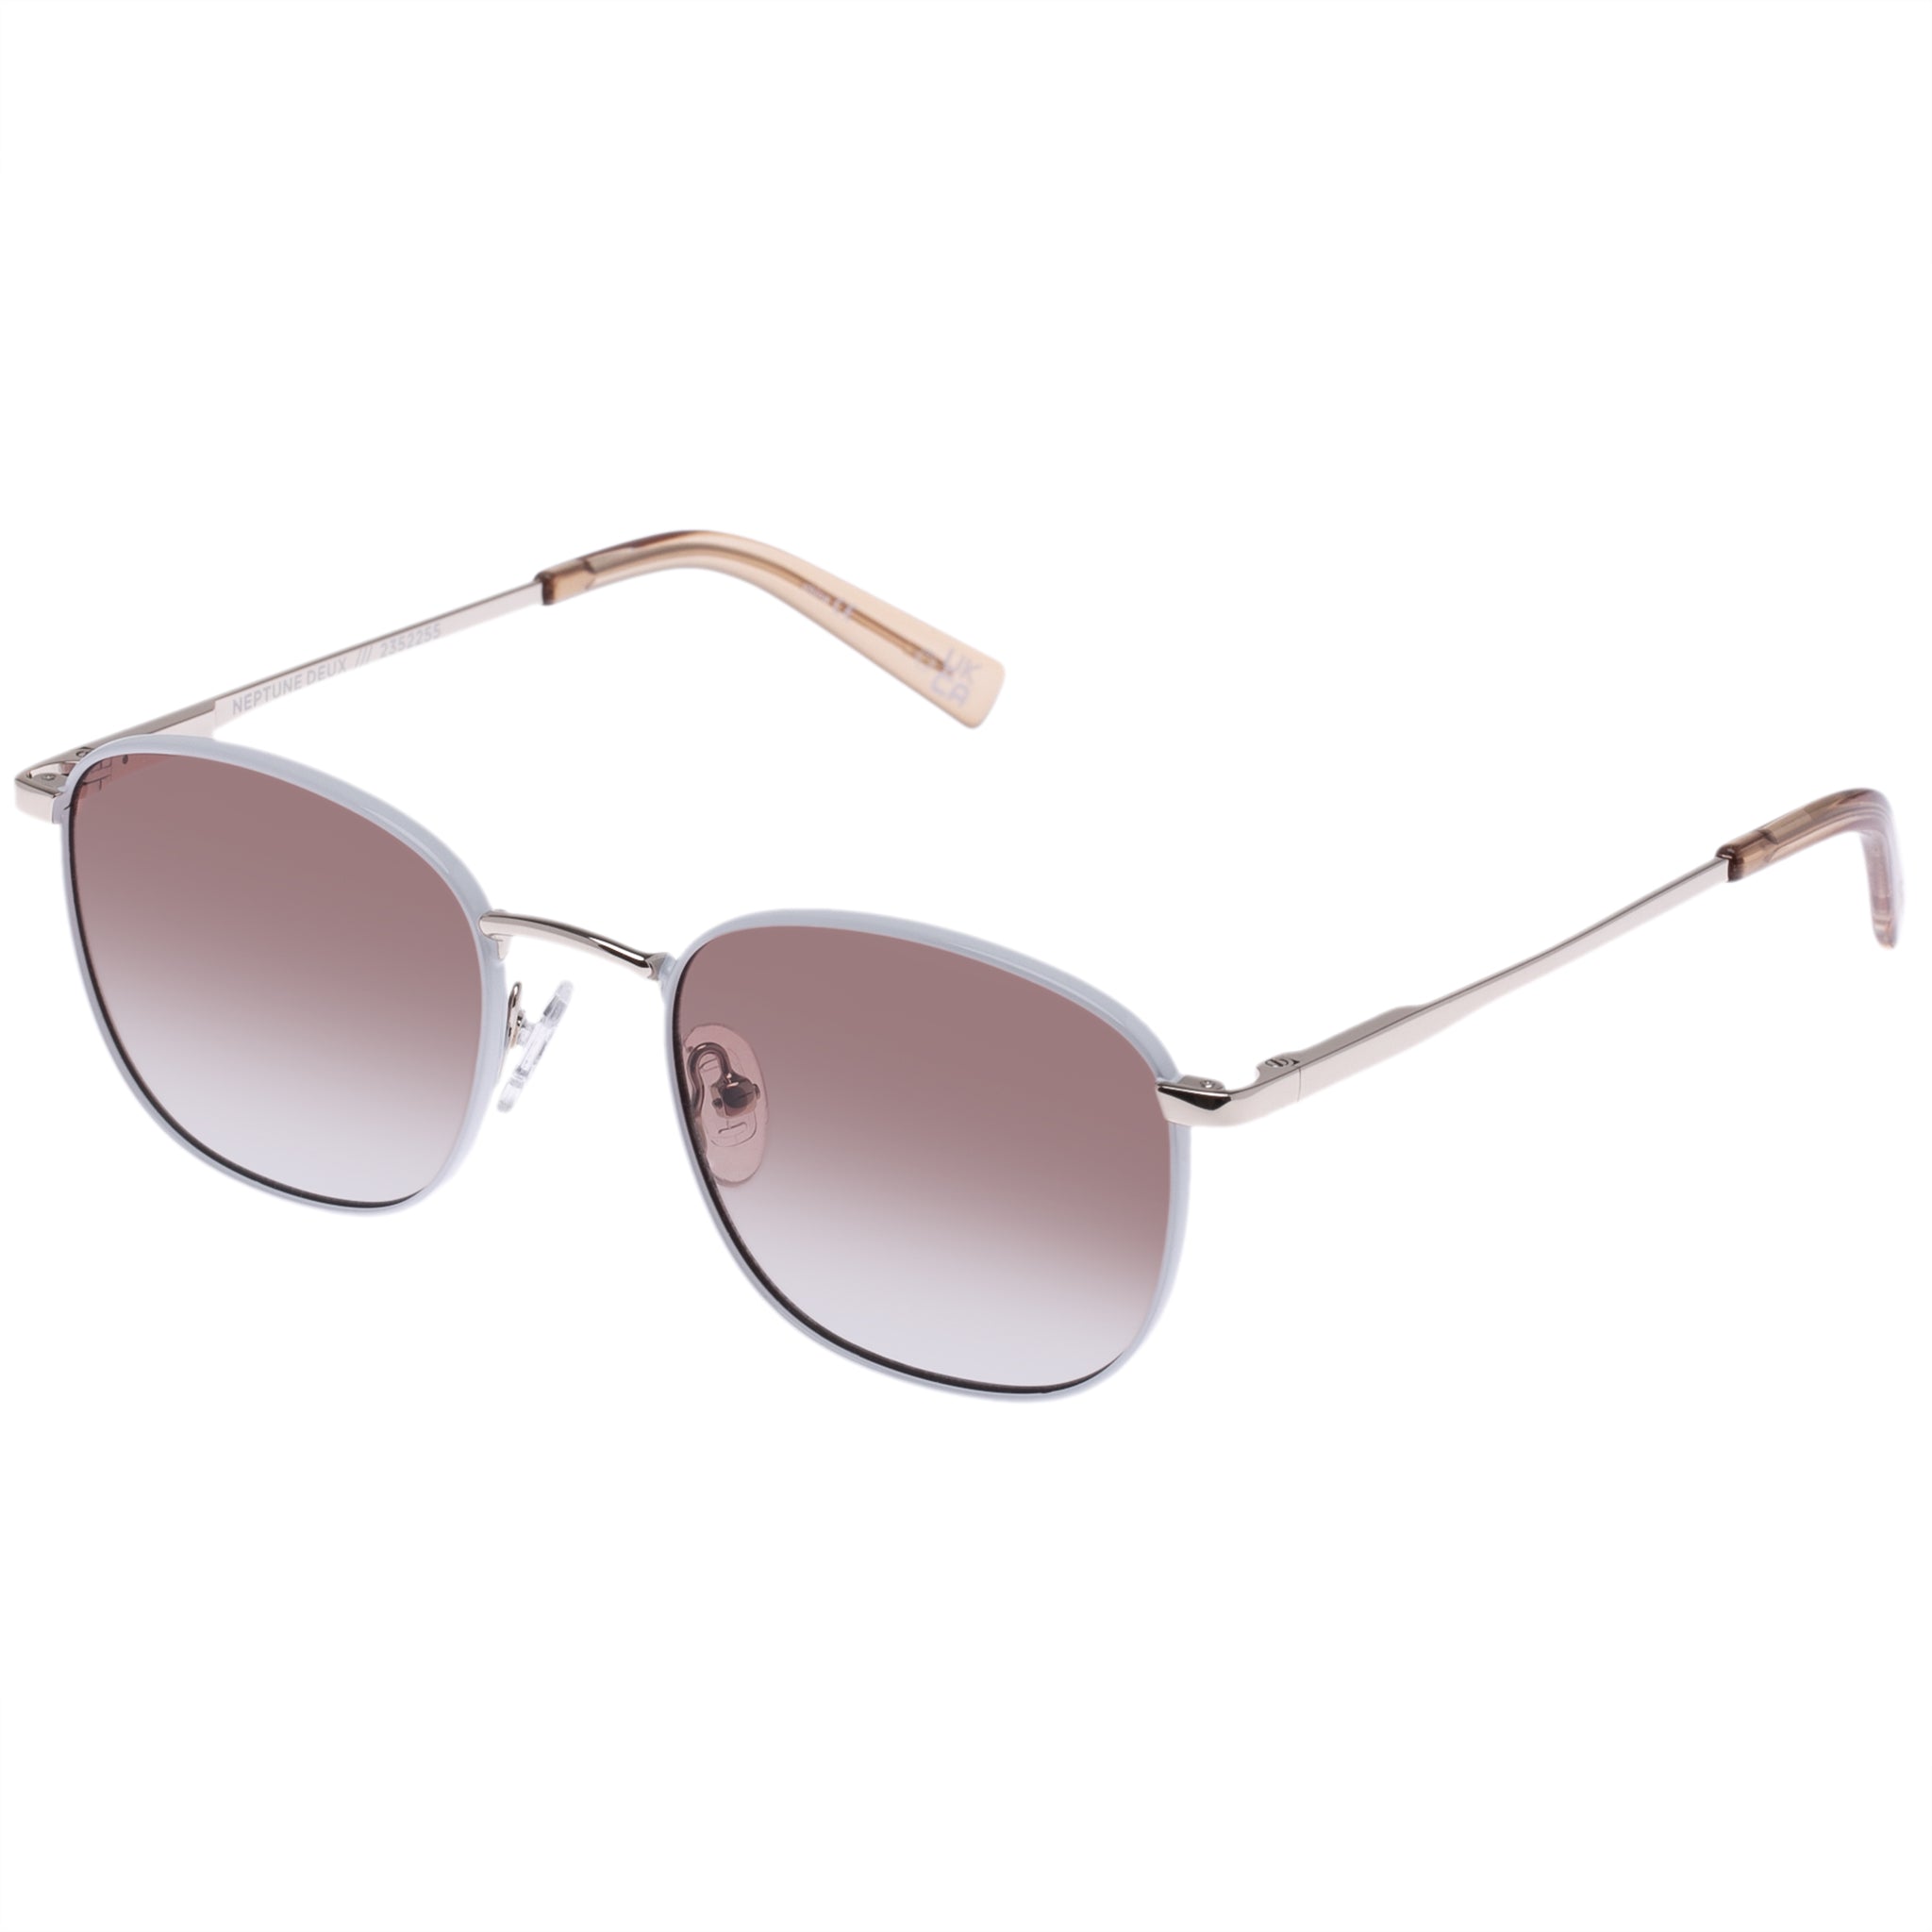 Le Specs Sunglasses Neptune Deux - Gold/White